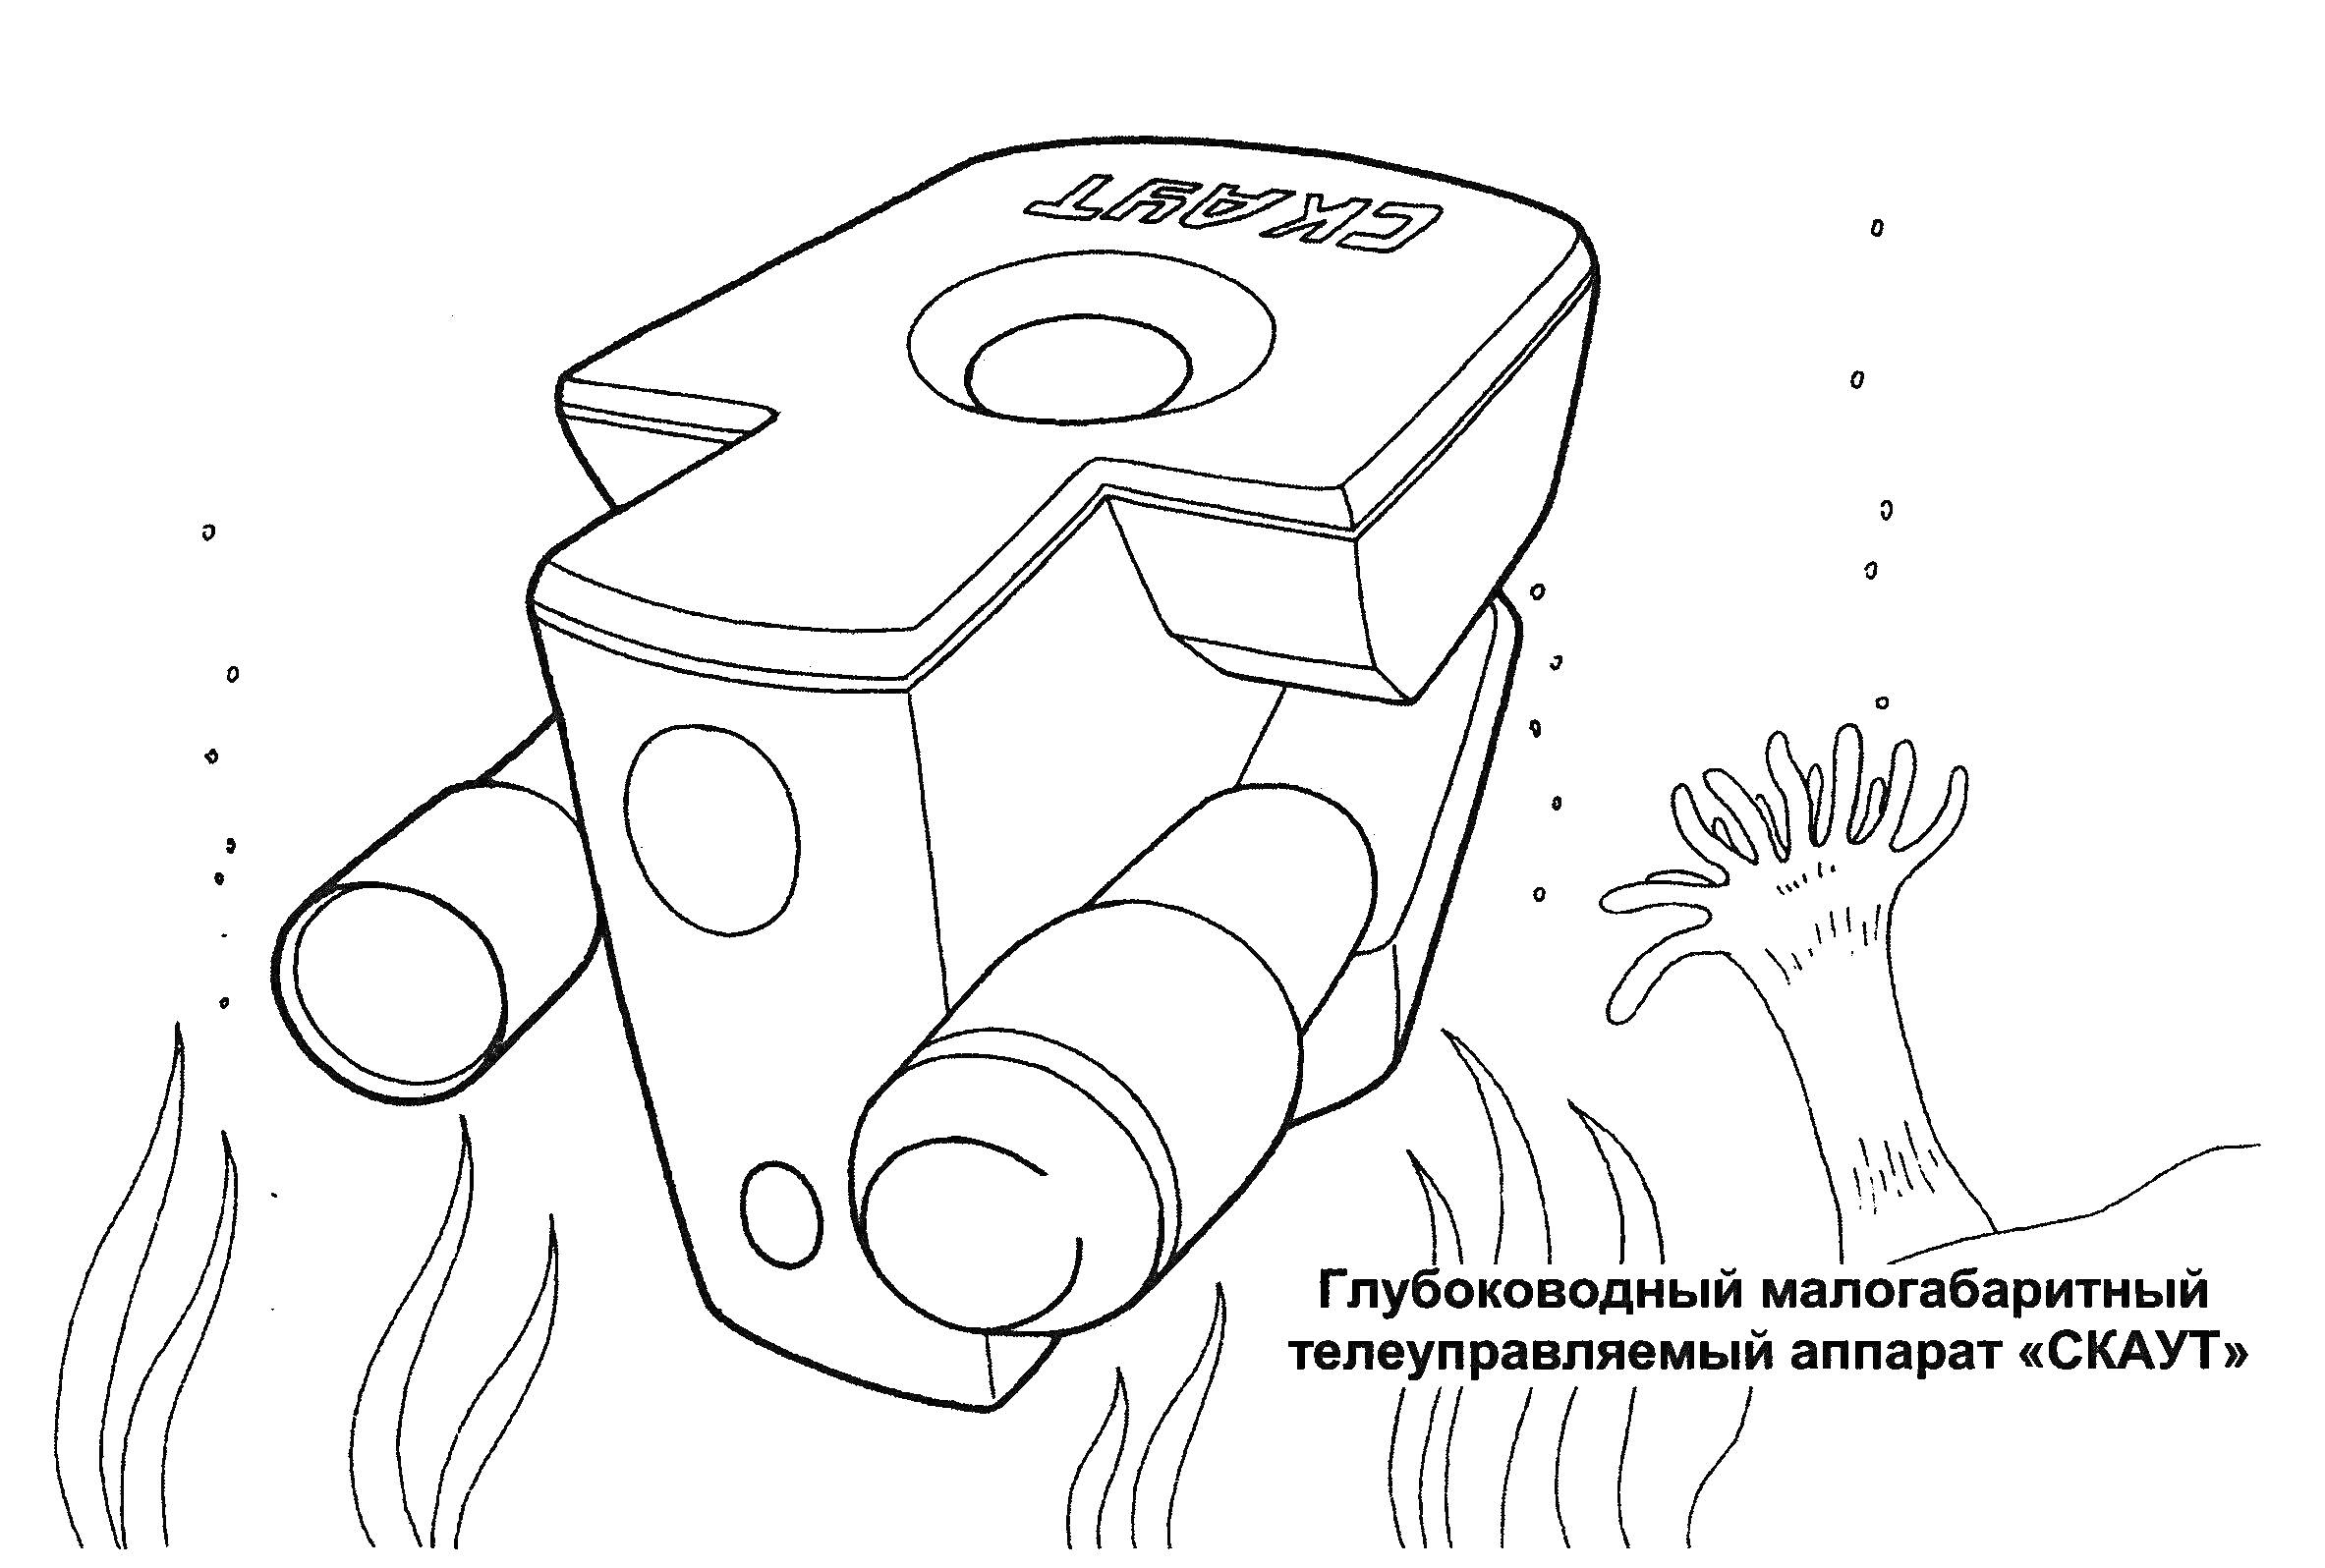 Глубоководный малогабаритный телеуправляемый аппарат «СКАТ», водоросли, подводный робот, рыбья кость